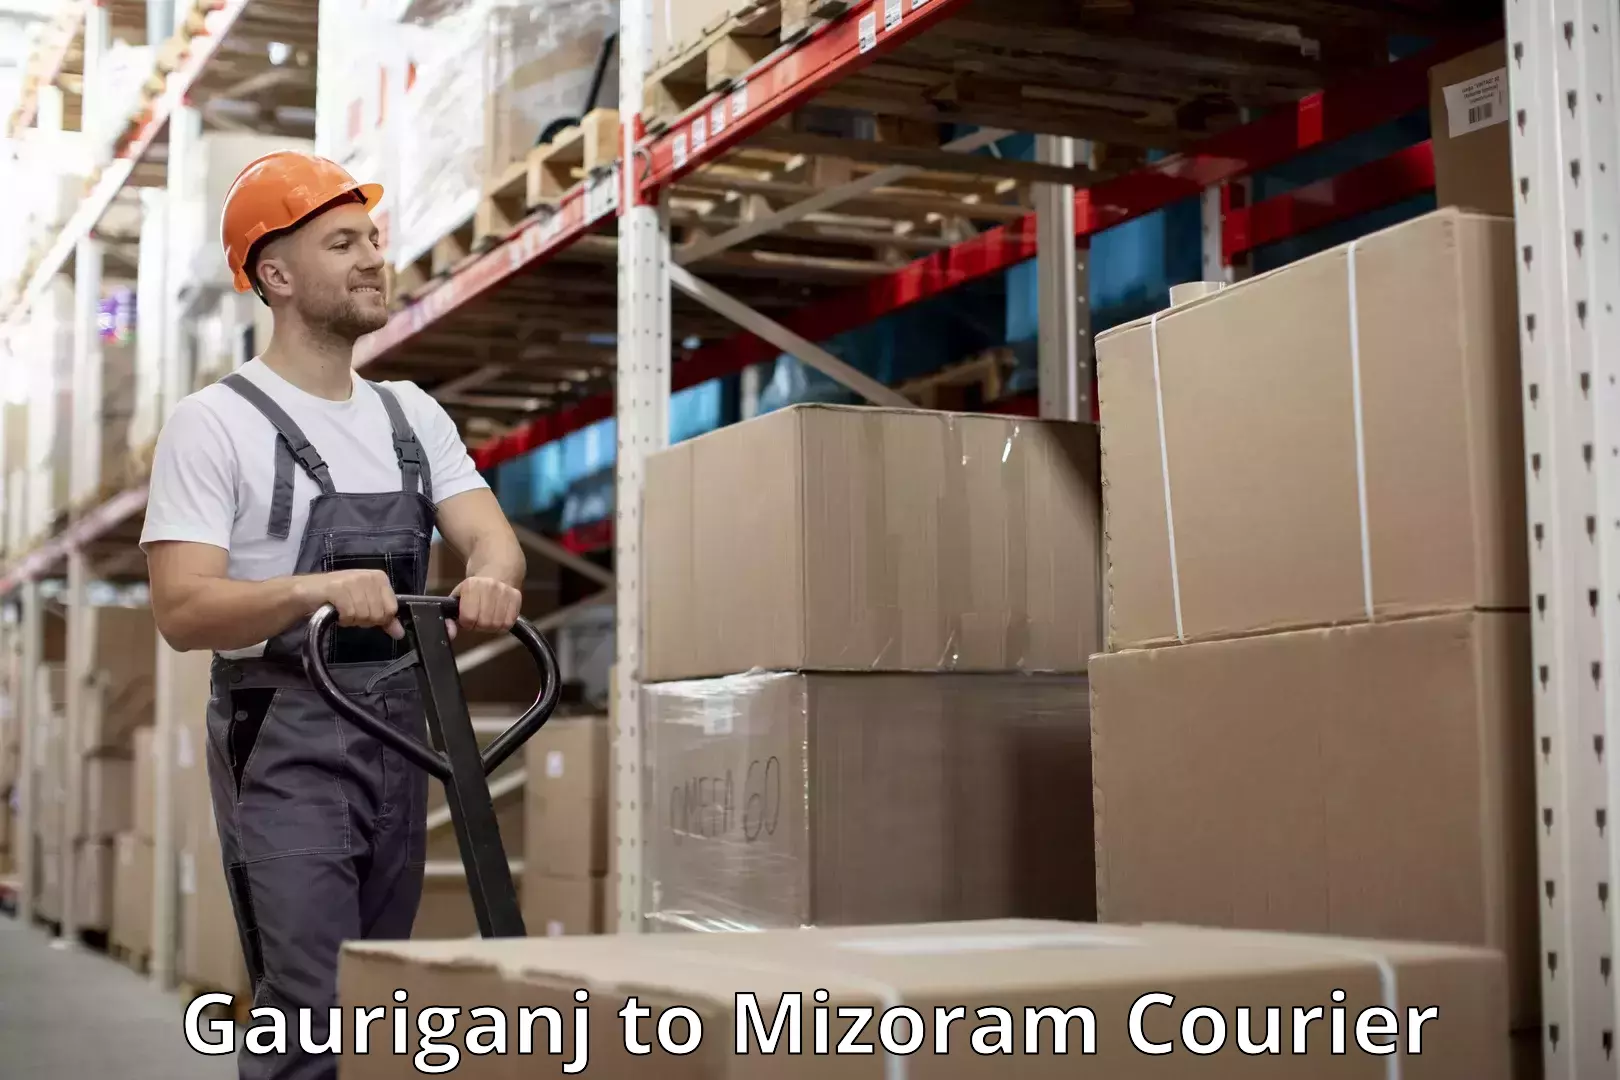 Baggage transport professionals Gauriganj to Mizoram